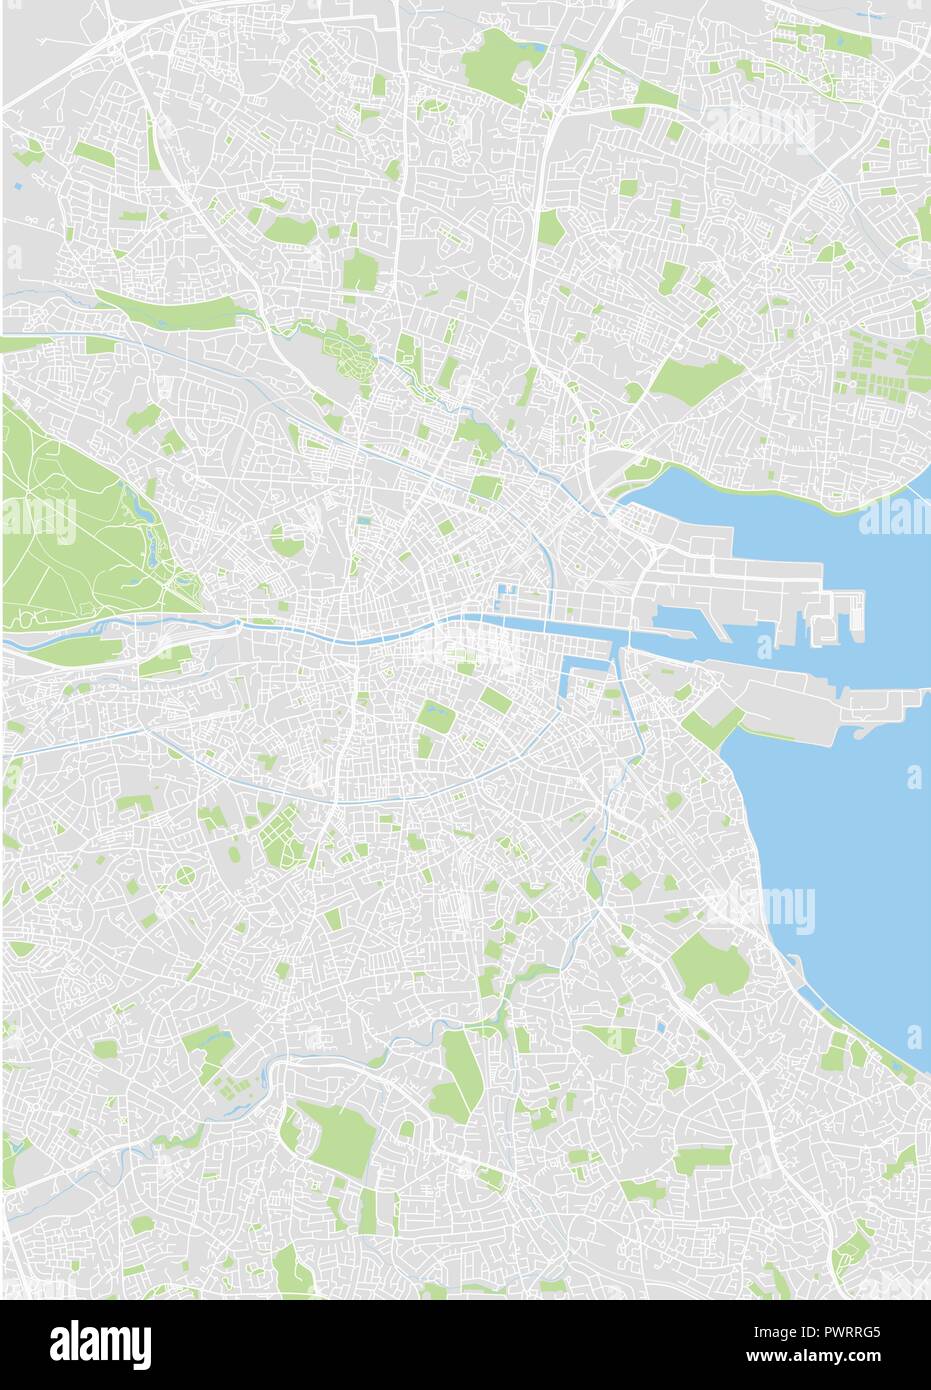 Vettore dettagliata mappa a colori di Dublino il piano particolareggiato della città, fiumi e strade Illustrazione Vettoriale